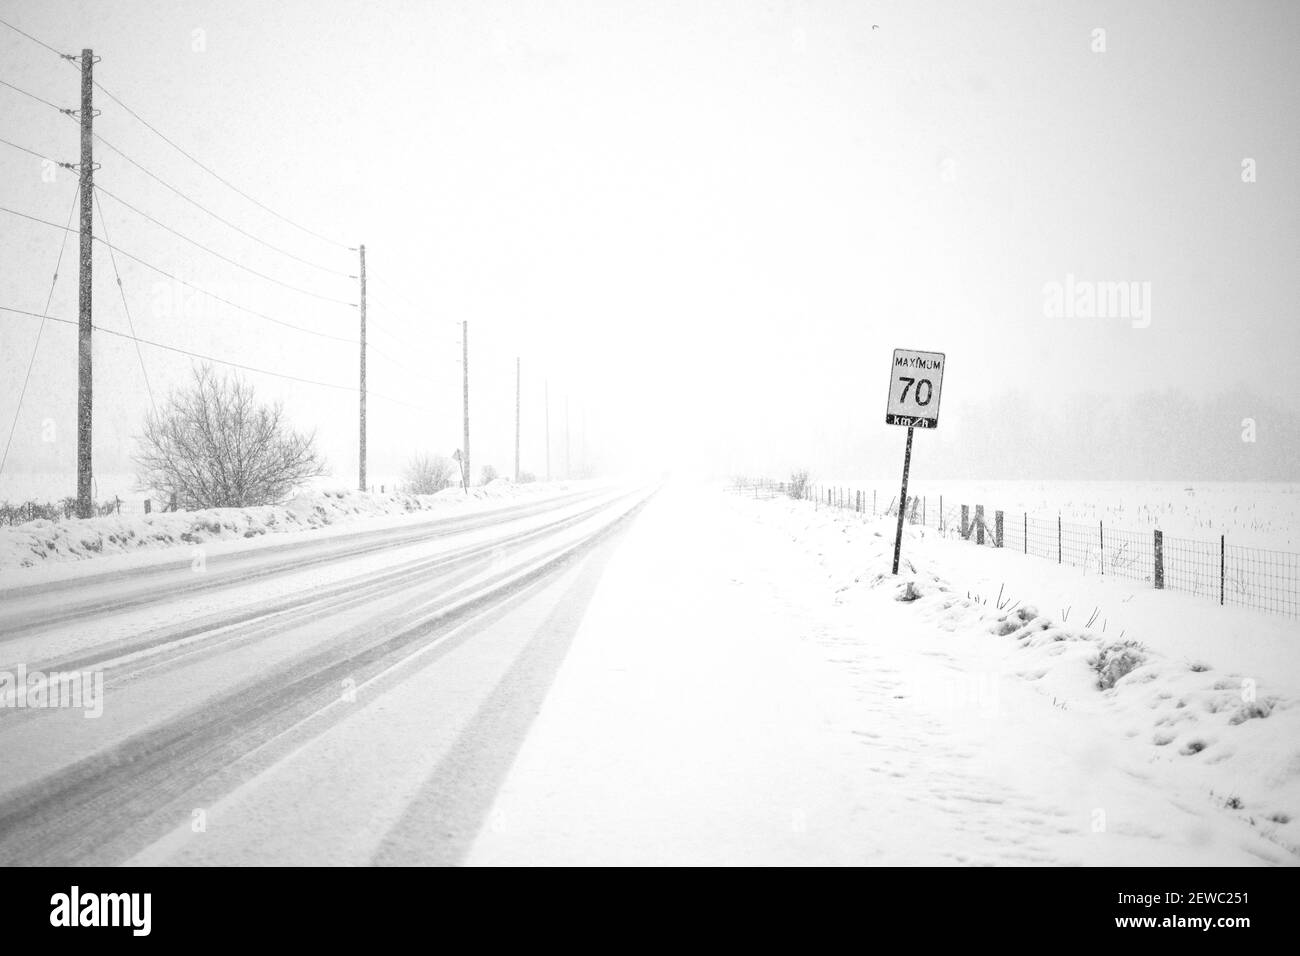 Durante le condizioni di whitout di una bizzard, le linee elettriche lungo una strada rurale svaniscono nella neve. Un segnale del limite di velocità indica un limite di 70 km/h. Foto Stock